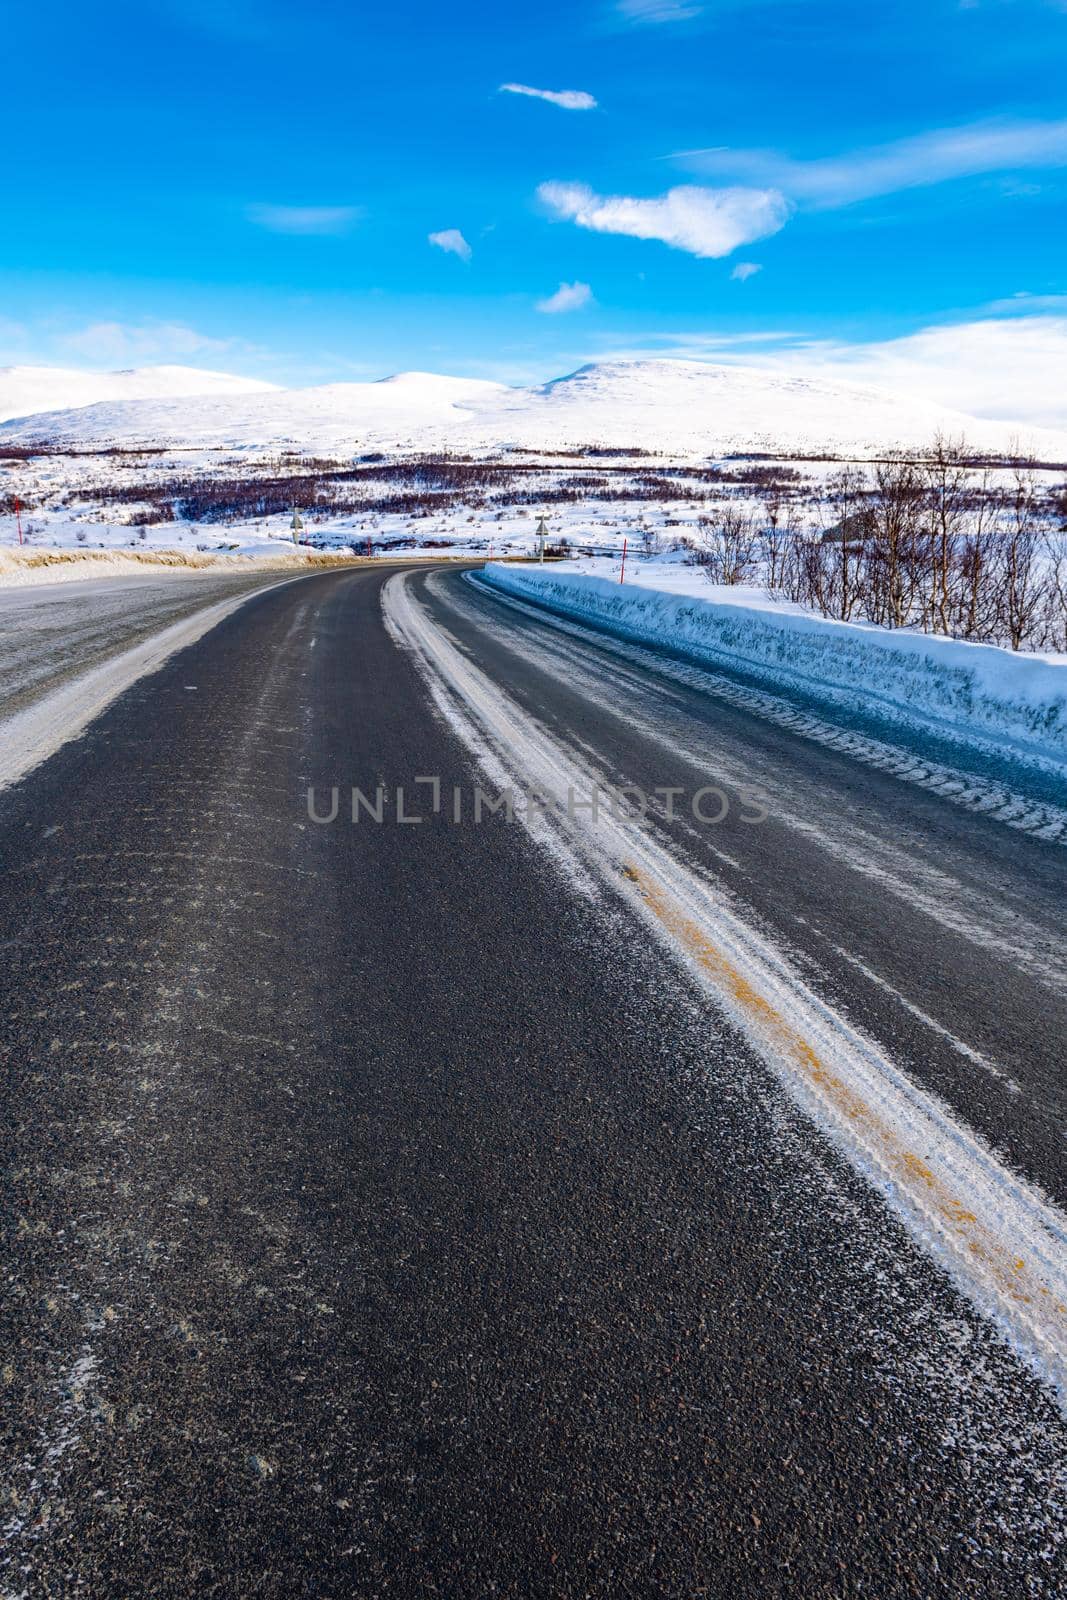 Frozen Road, Norway